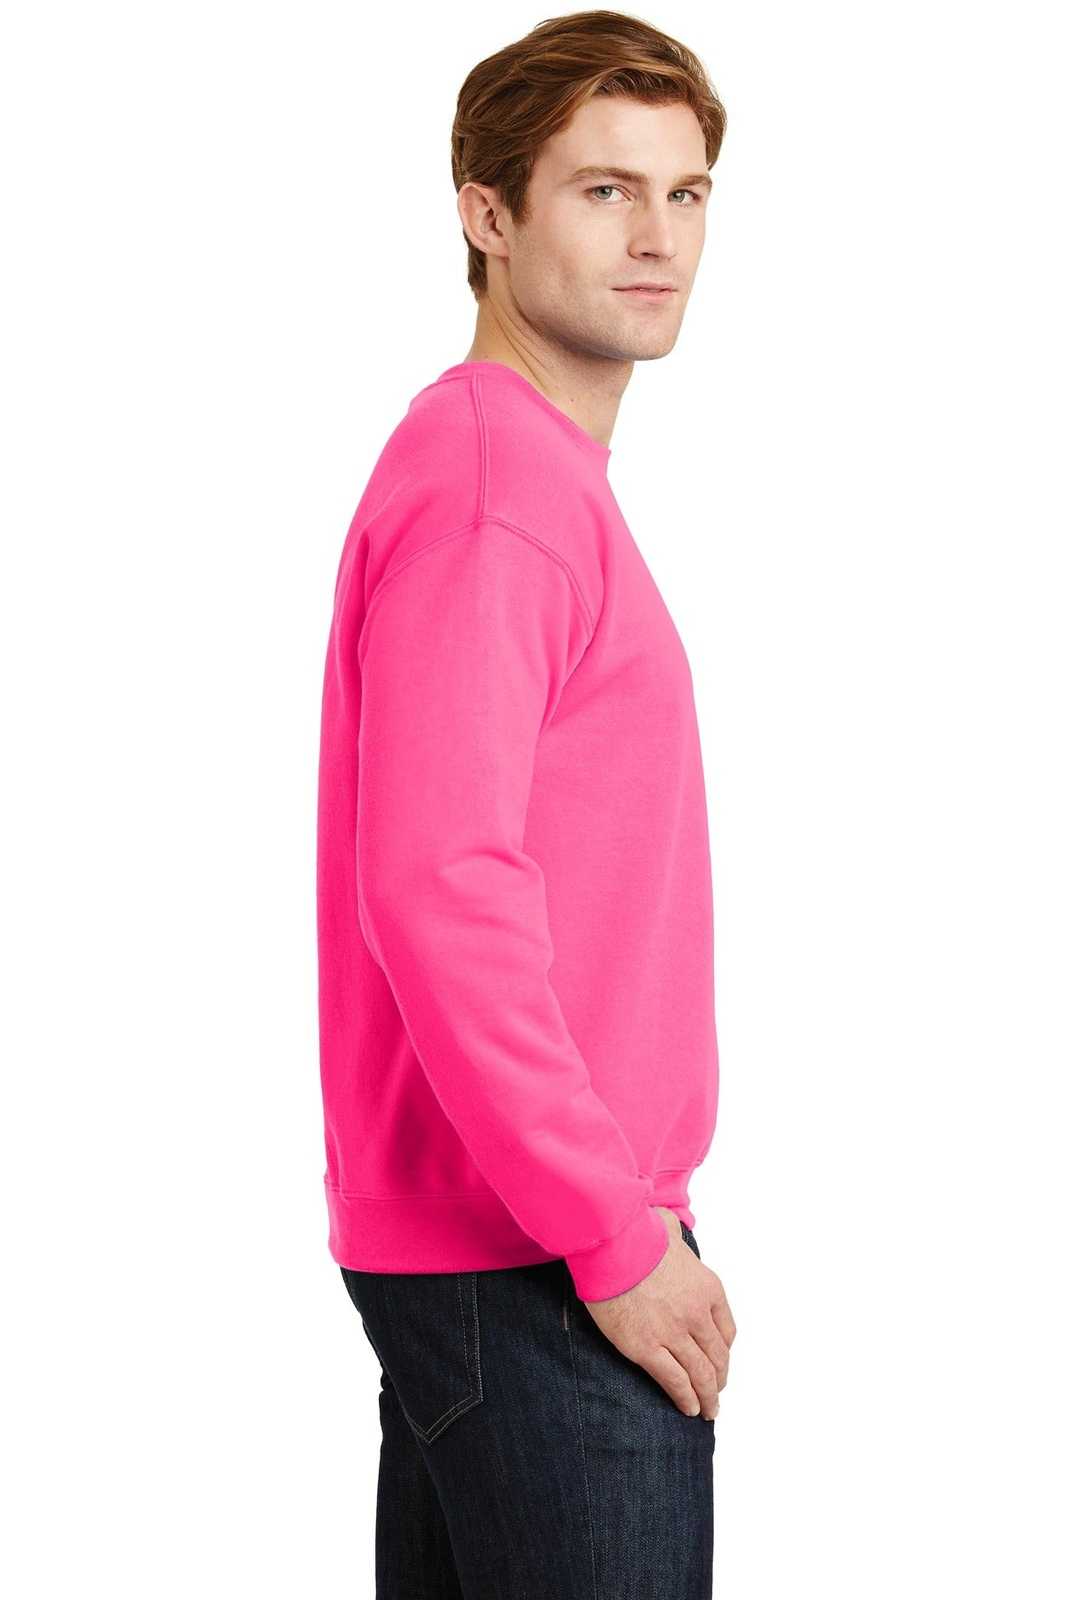 Gildan 18000 Heavy Blend Crewneck Sweatshirt - Safety Pink - HIT a Double